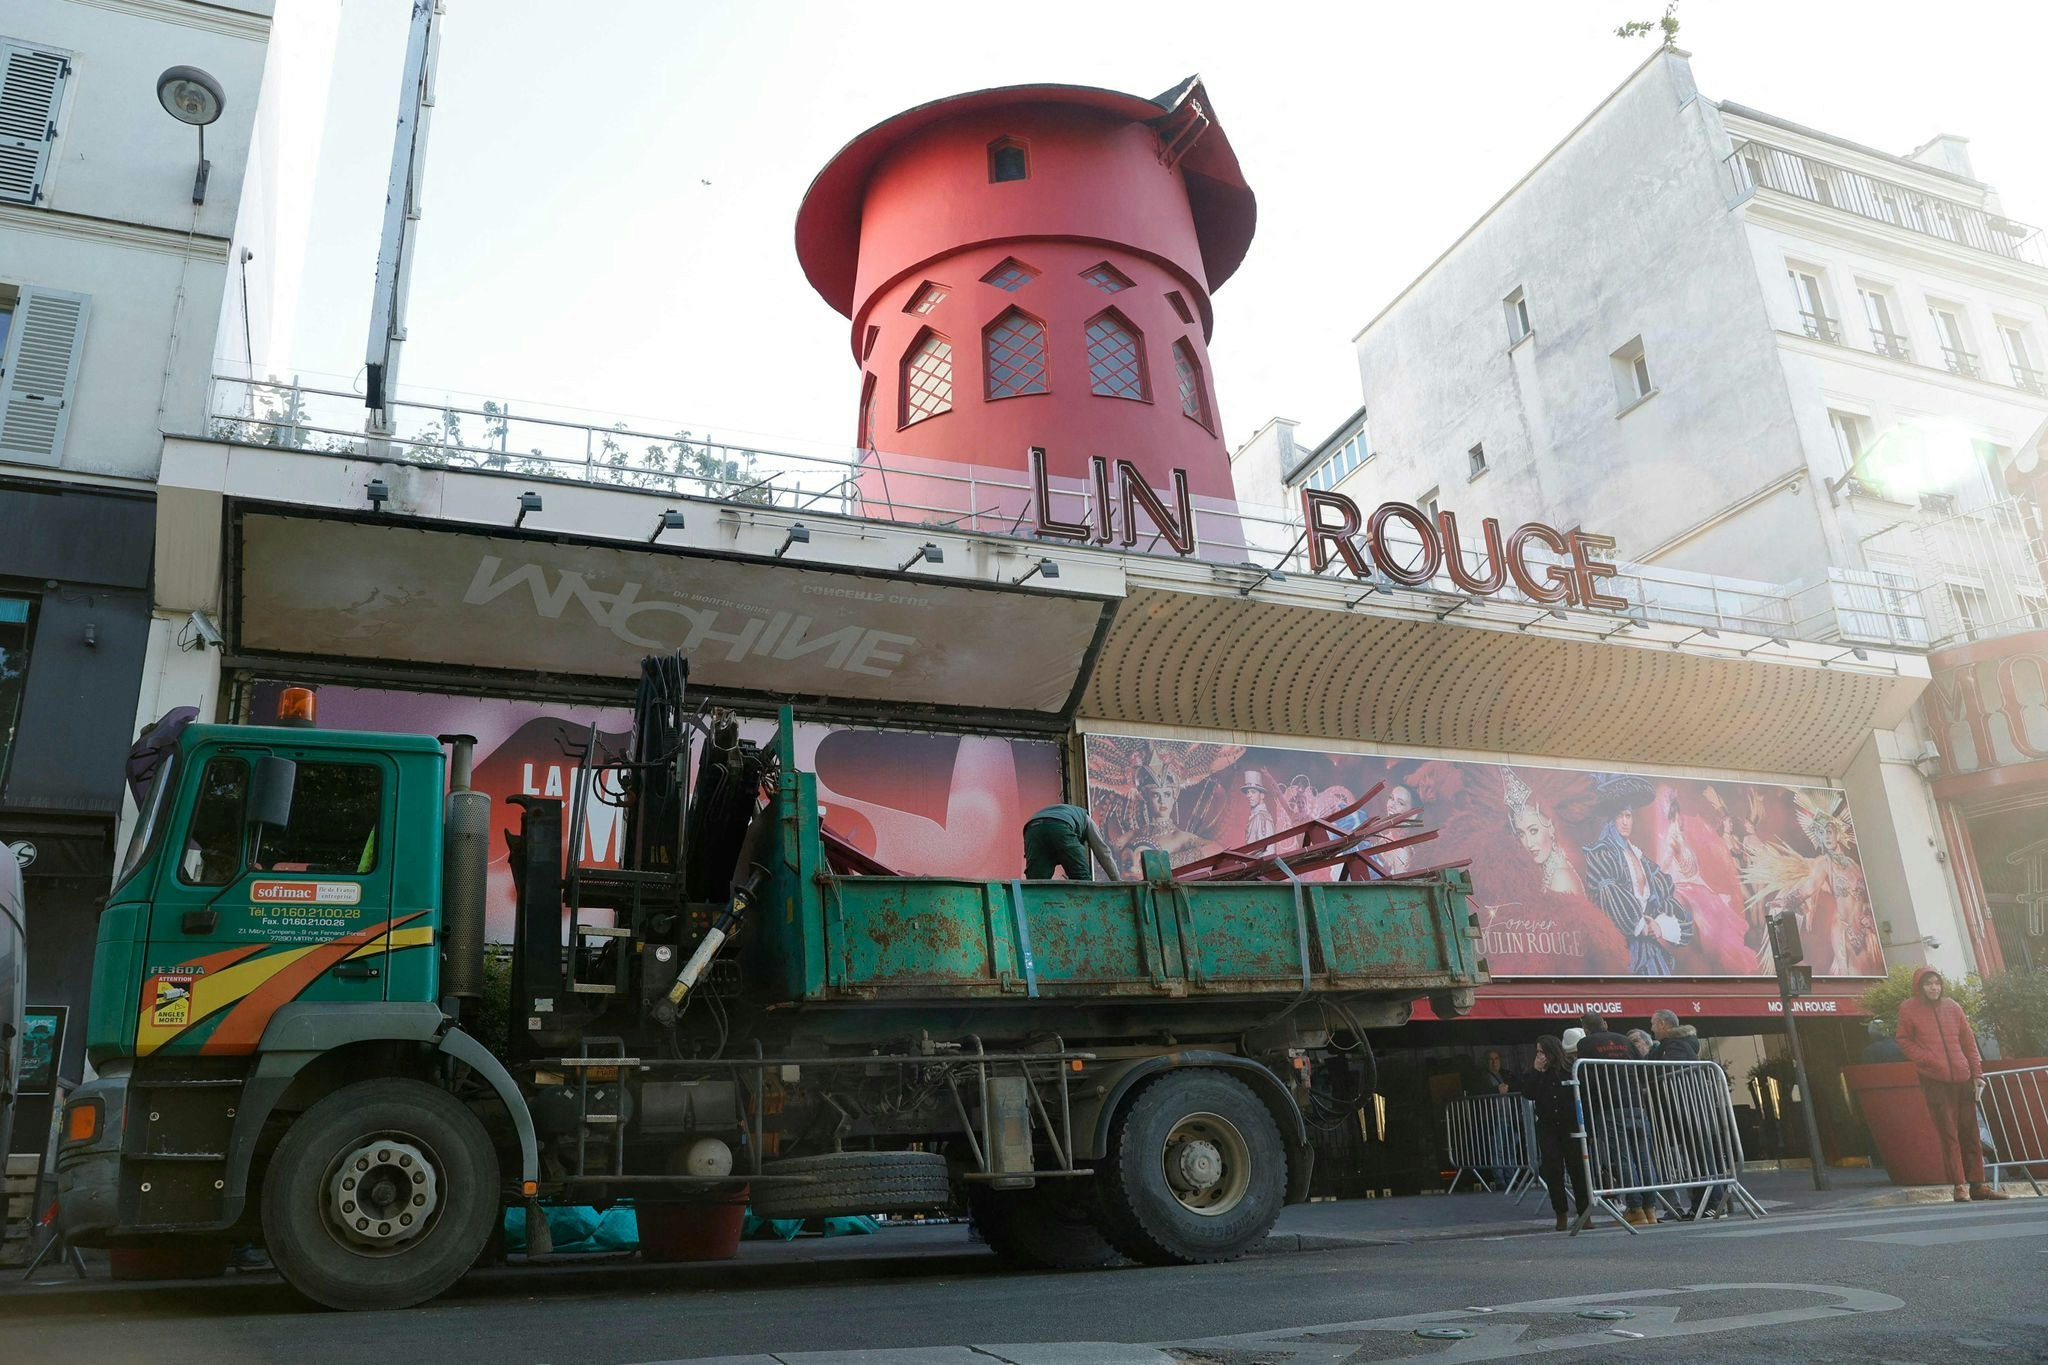 notfälle: mühlrad des pariser cabarets moulin rouge stürzt ab